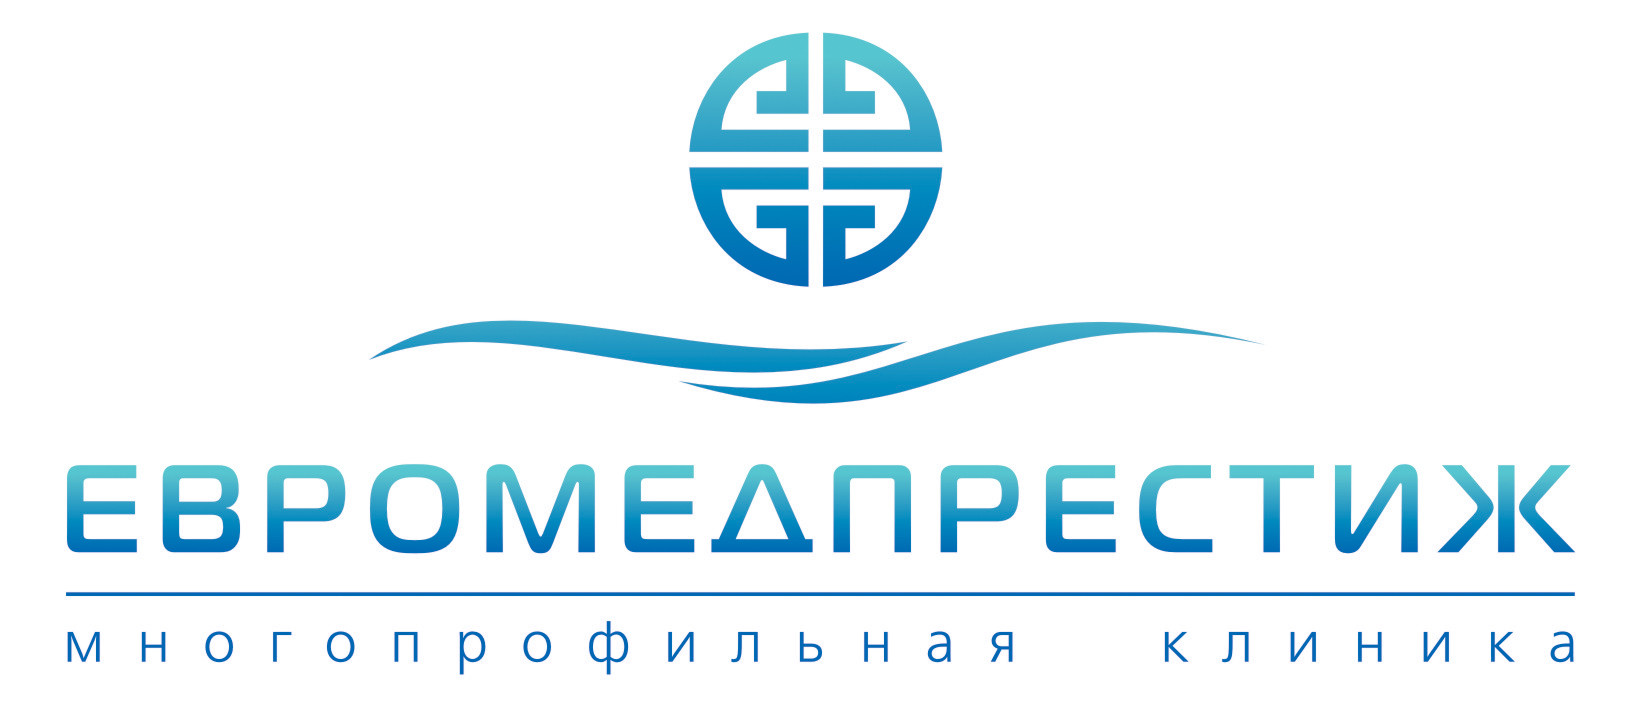 Лучшие офтальмологические клиники в москве